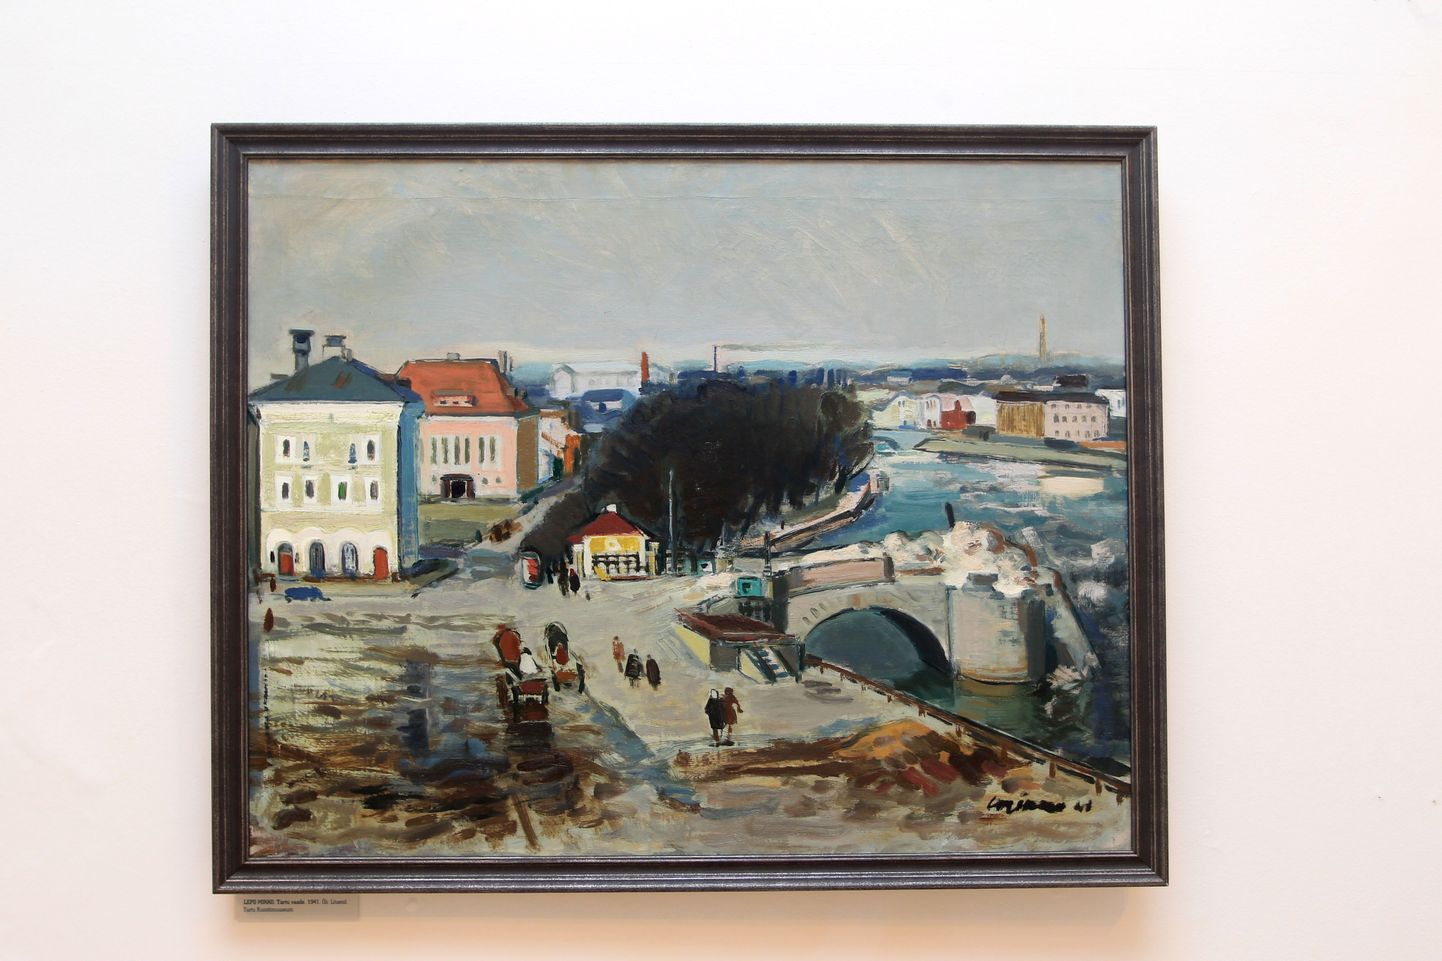 Lepo Mikko õlimaal "Tartu vaade" (1941) on näitusele toodud Tartu kunstimuuseumist.